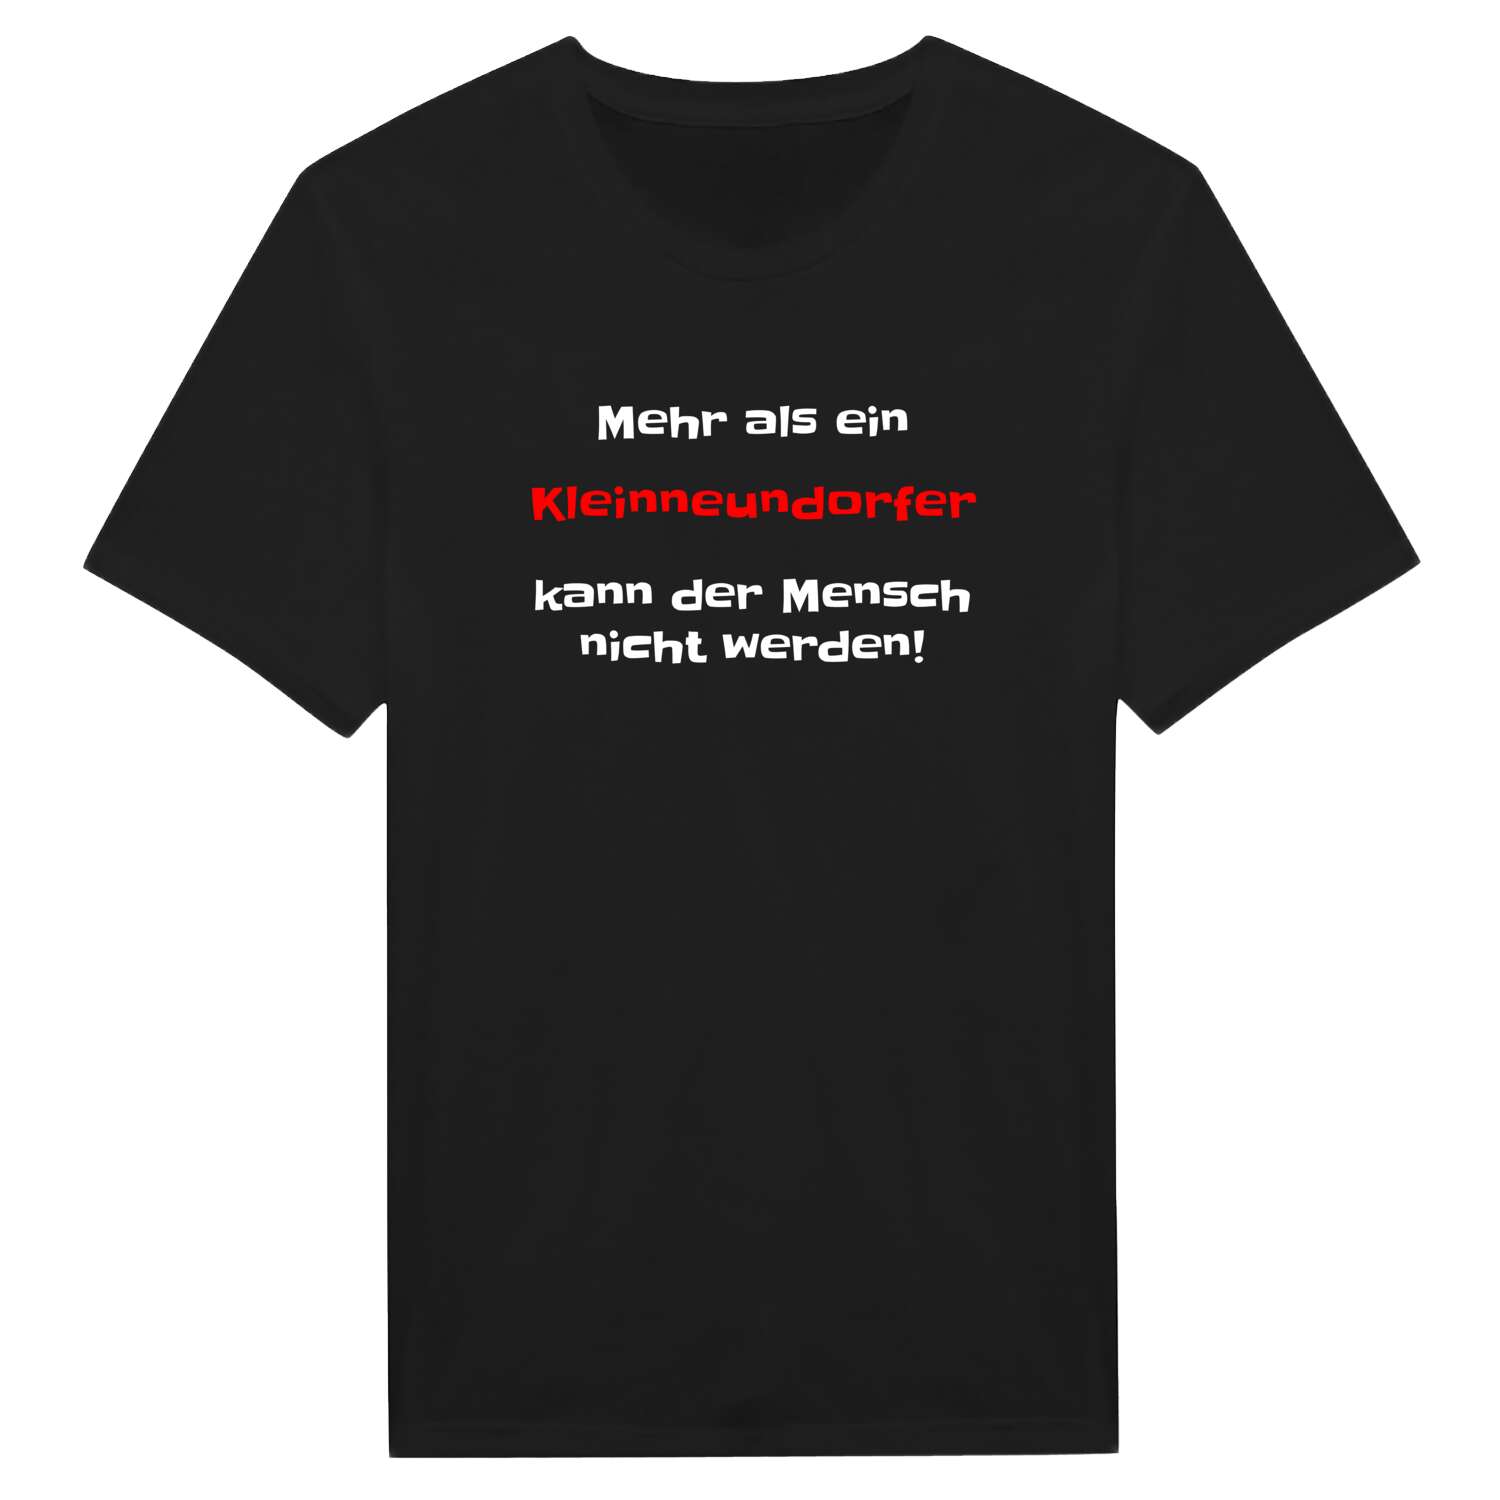 Kleinneundorf T-Shirt »Mehr als ein«